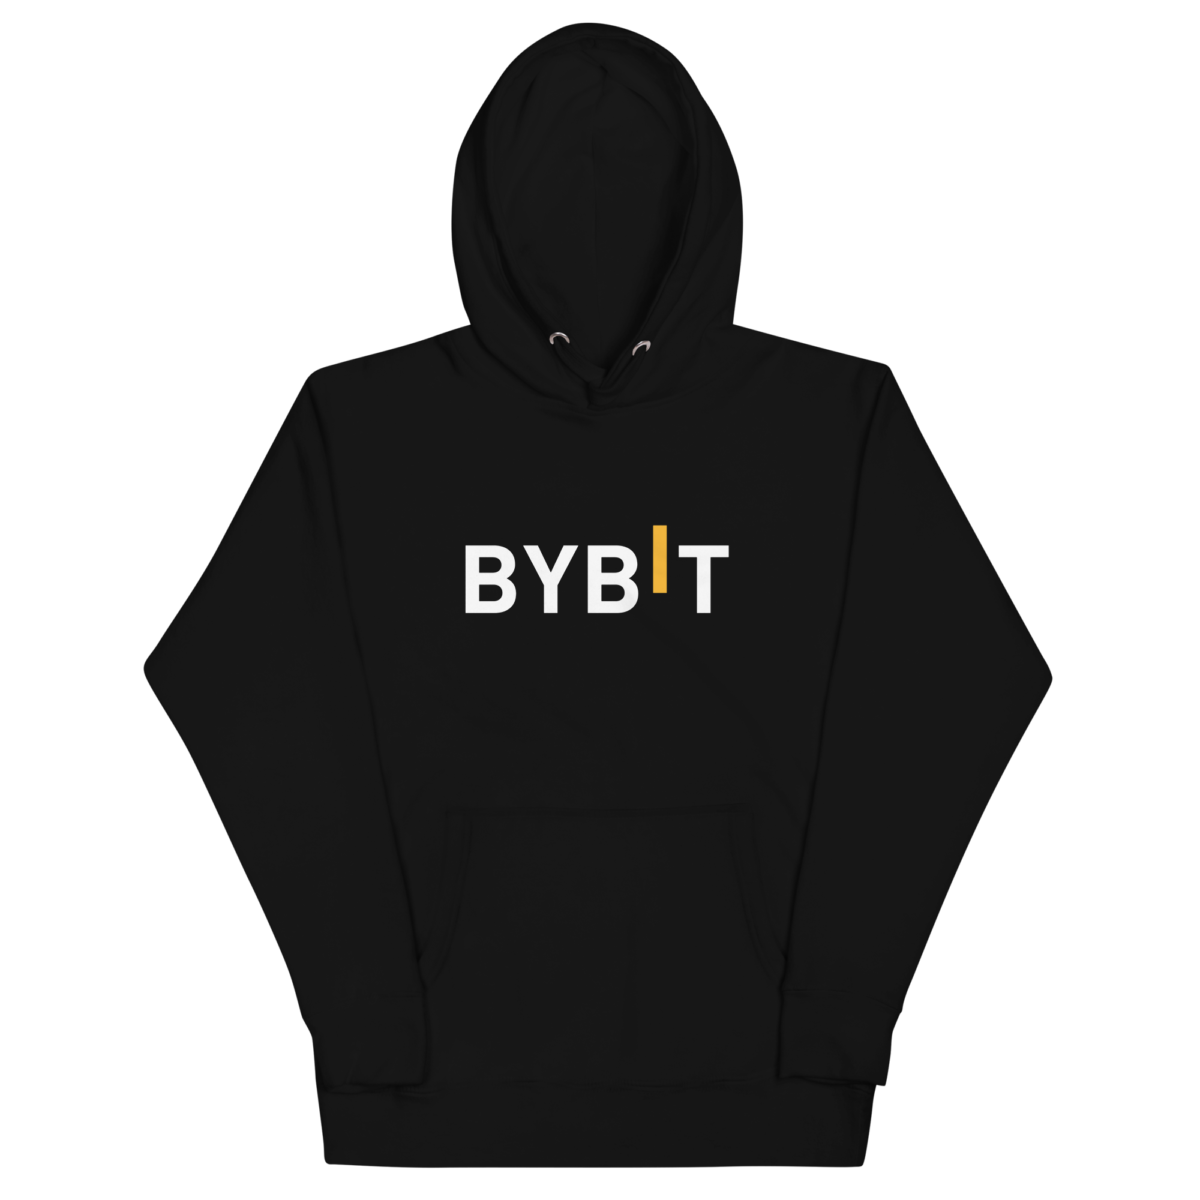 unisex premium hoodie black front 6321d1ba713b6 - Bybit Hoodie